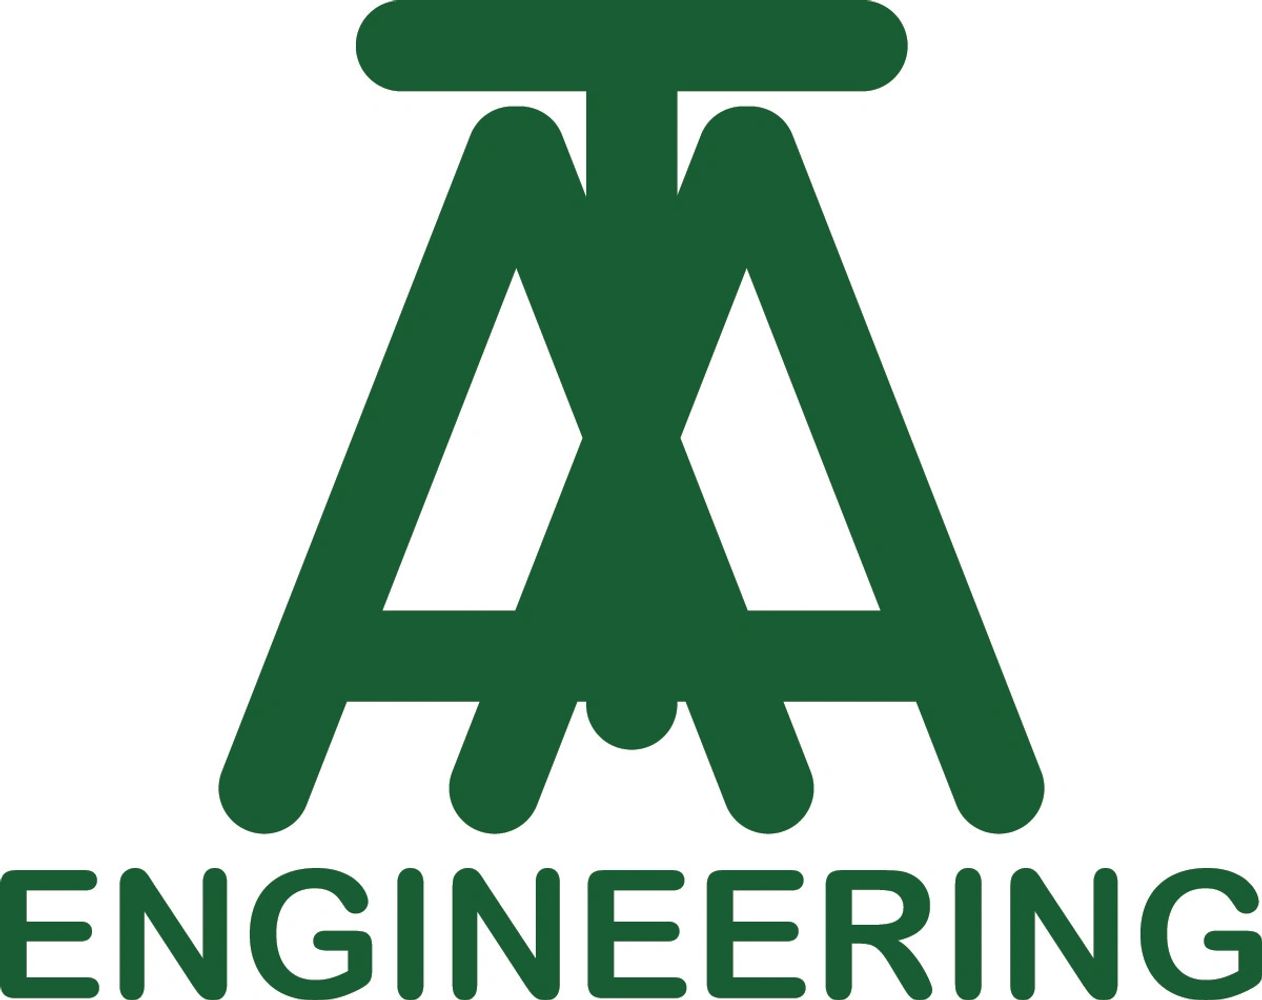 AAT Engineering, LLC logo
Geotechnical Engineering, Civil Engineering